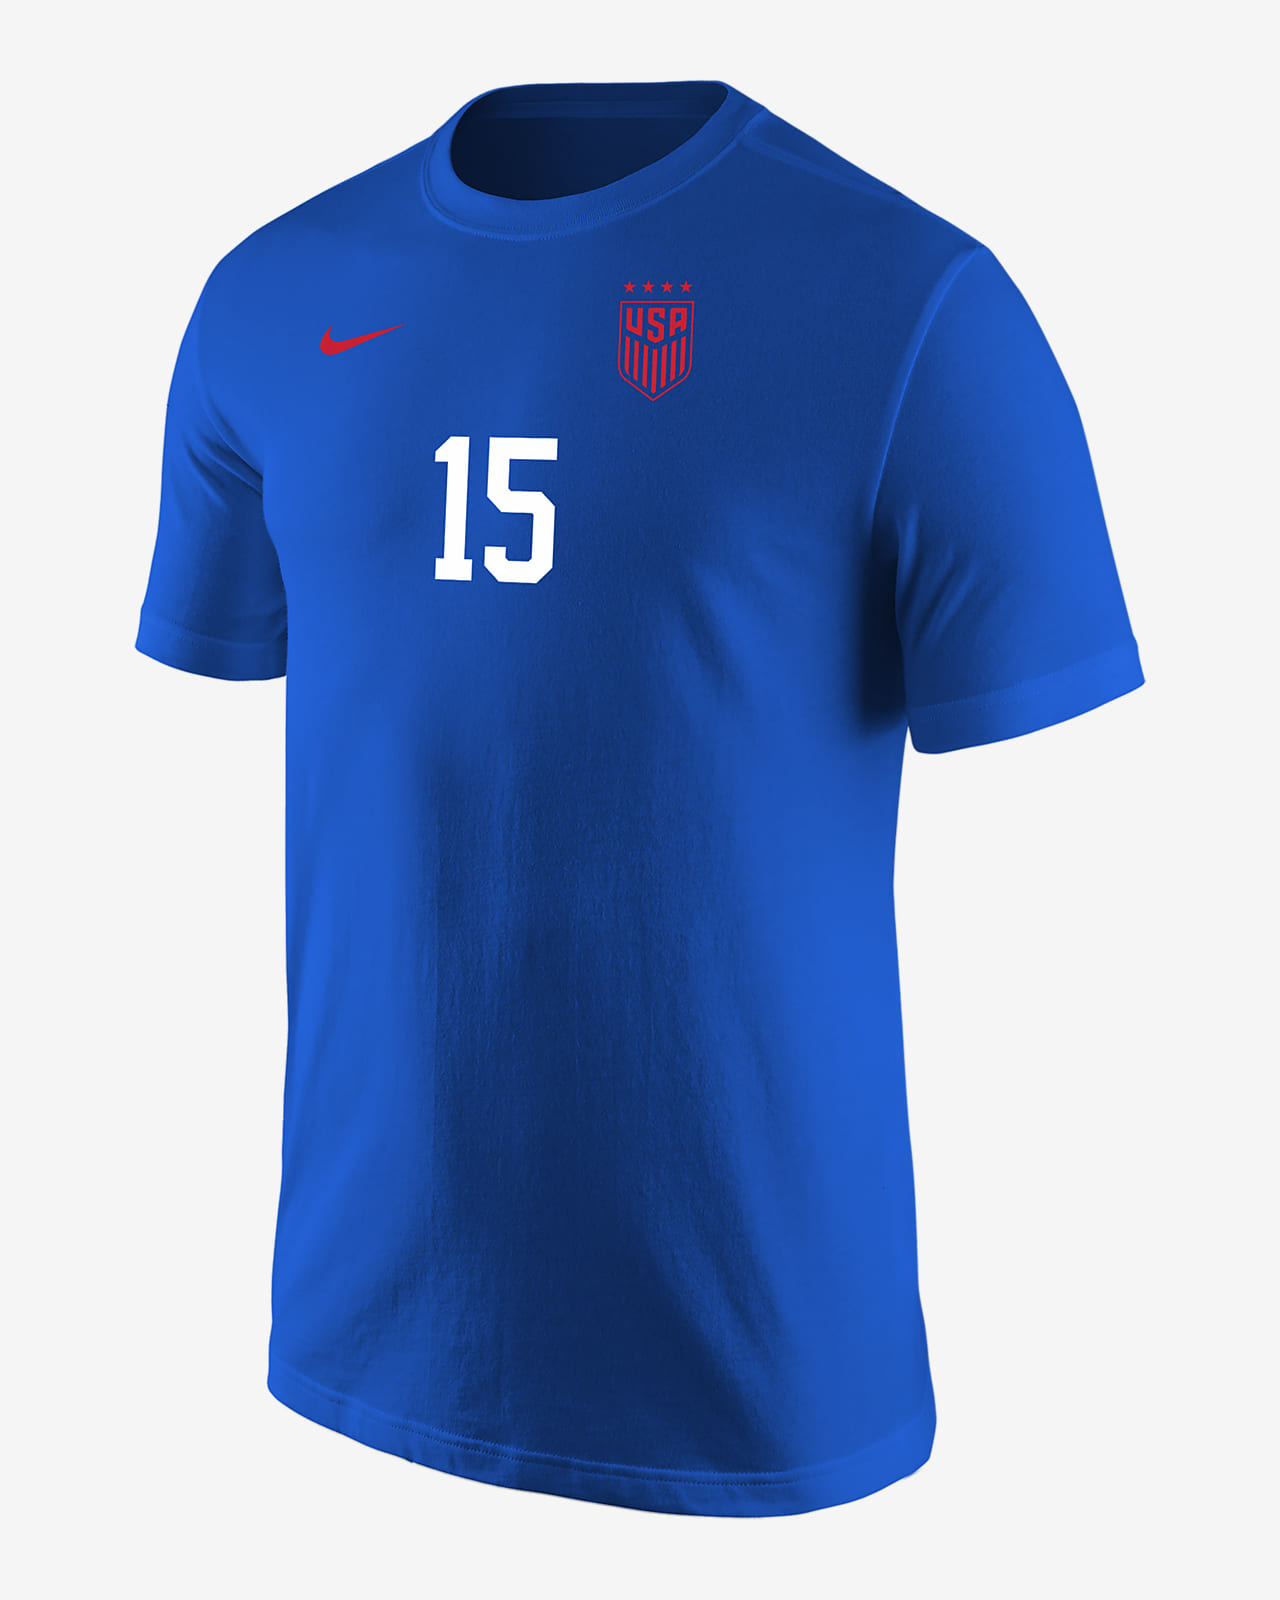 Megan Rapinoe USWNT Men's Nike Soccer T-Shirt